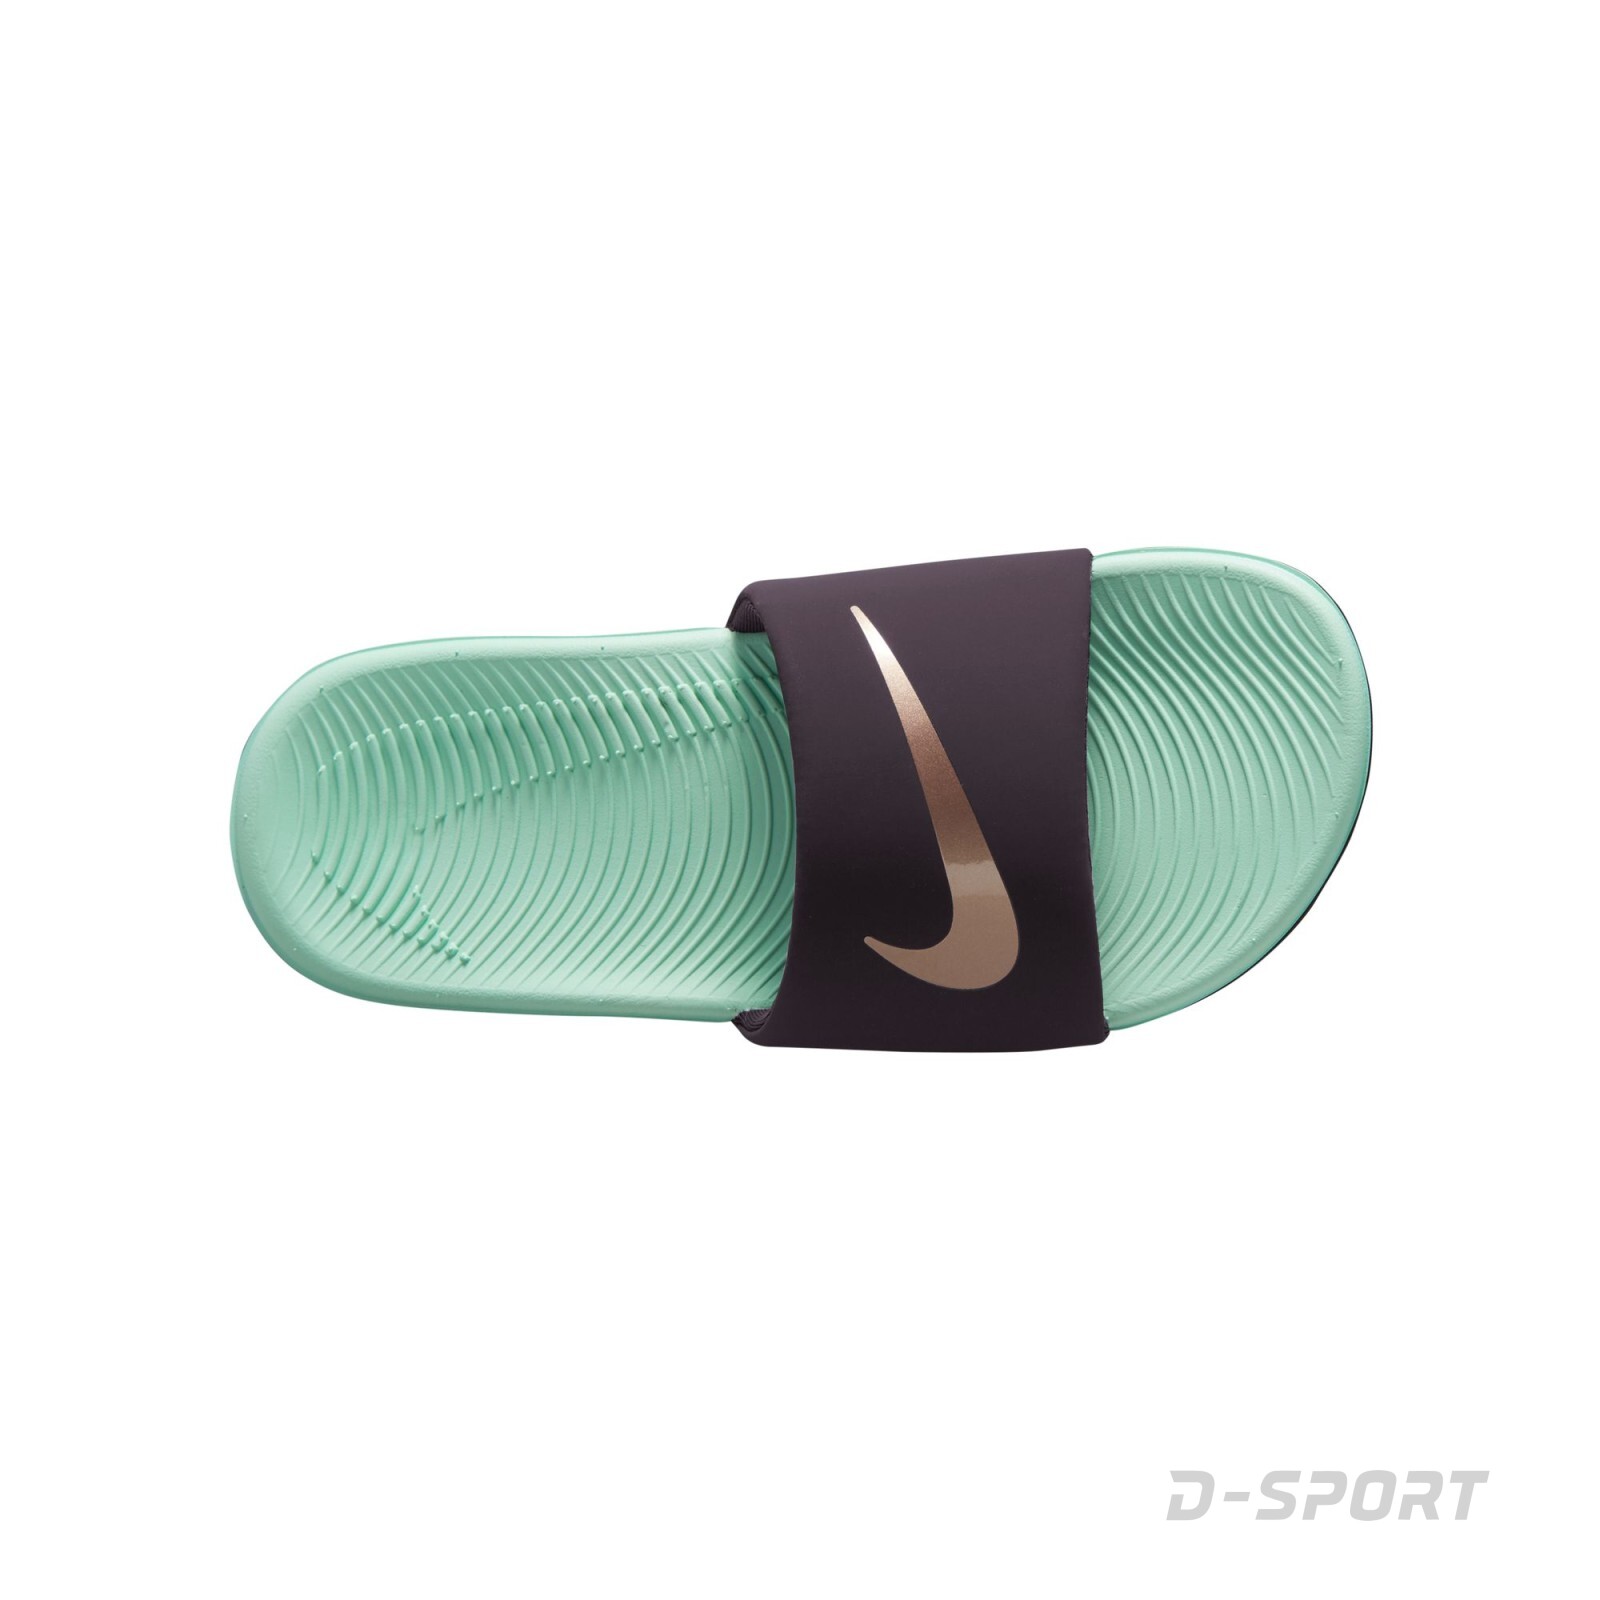 Nike Kawa